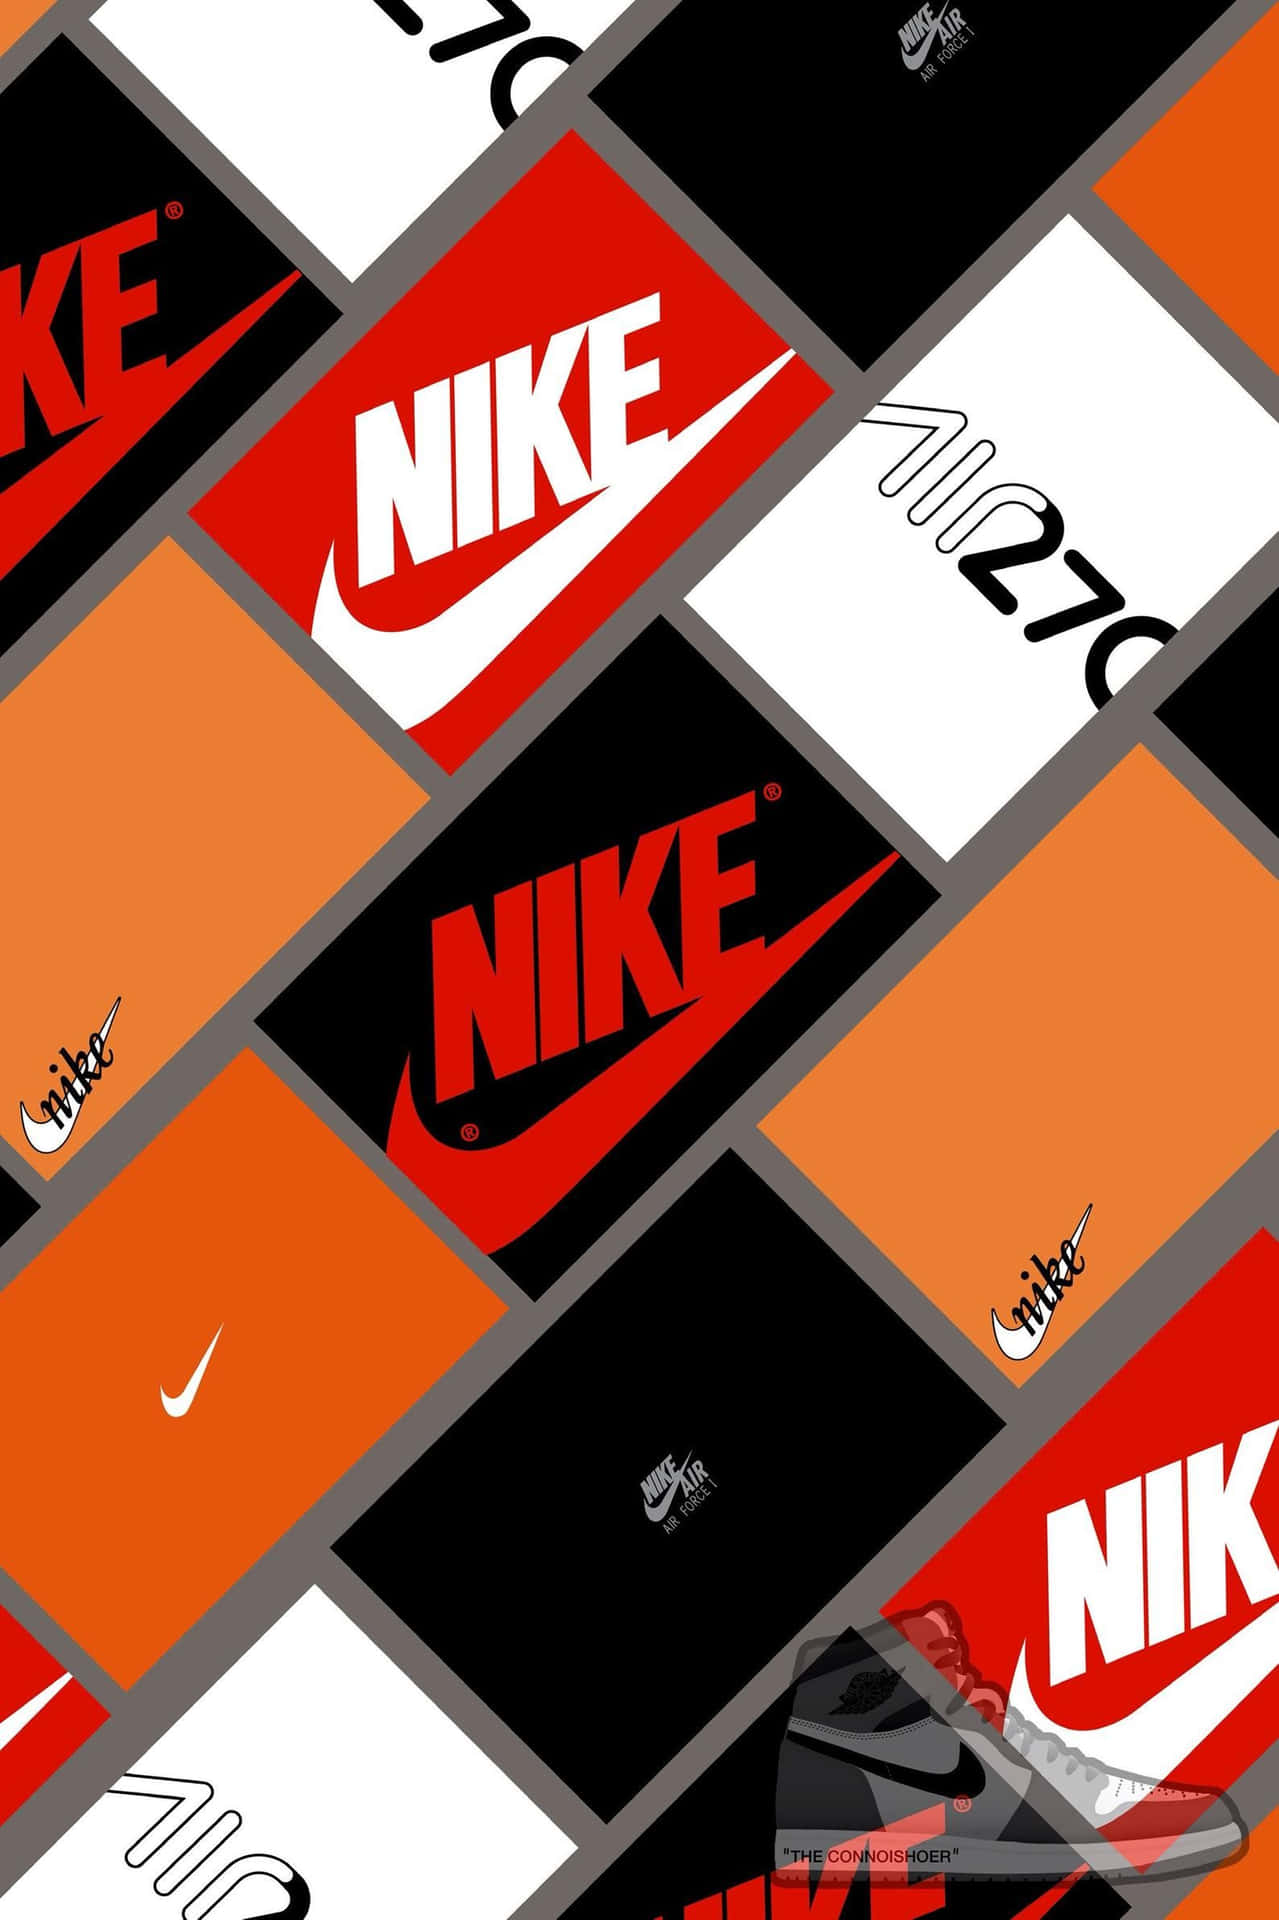 Logosda Nike São Exibidos Em Um Fundo Preto. Papel de Parede